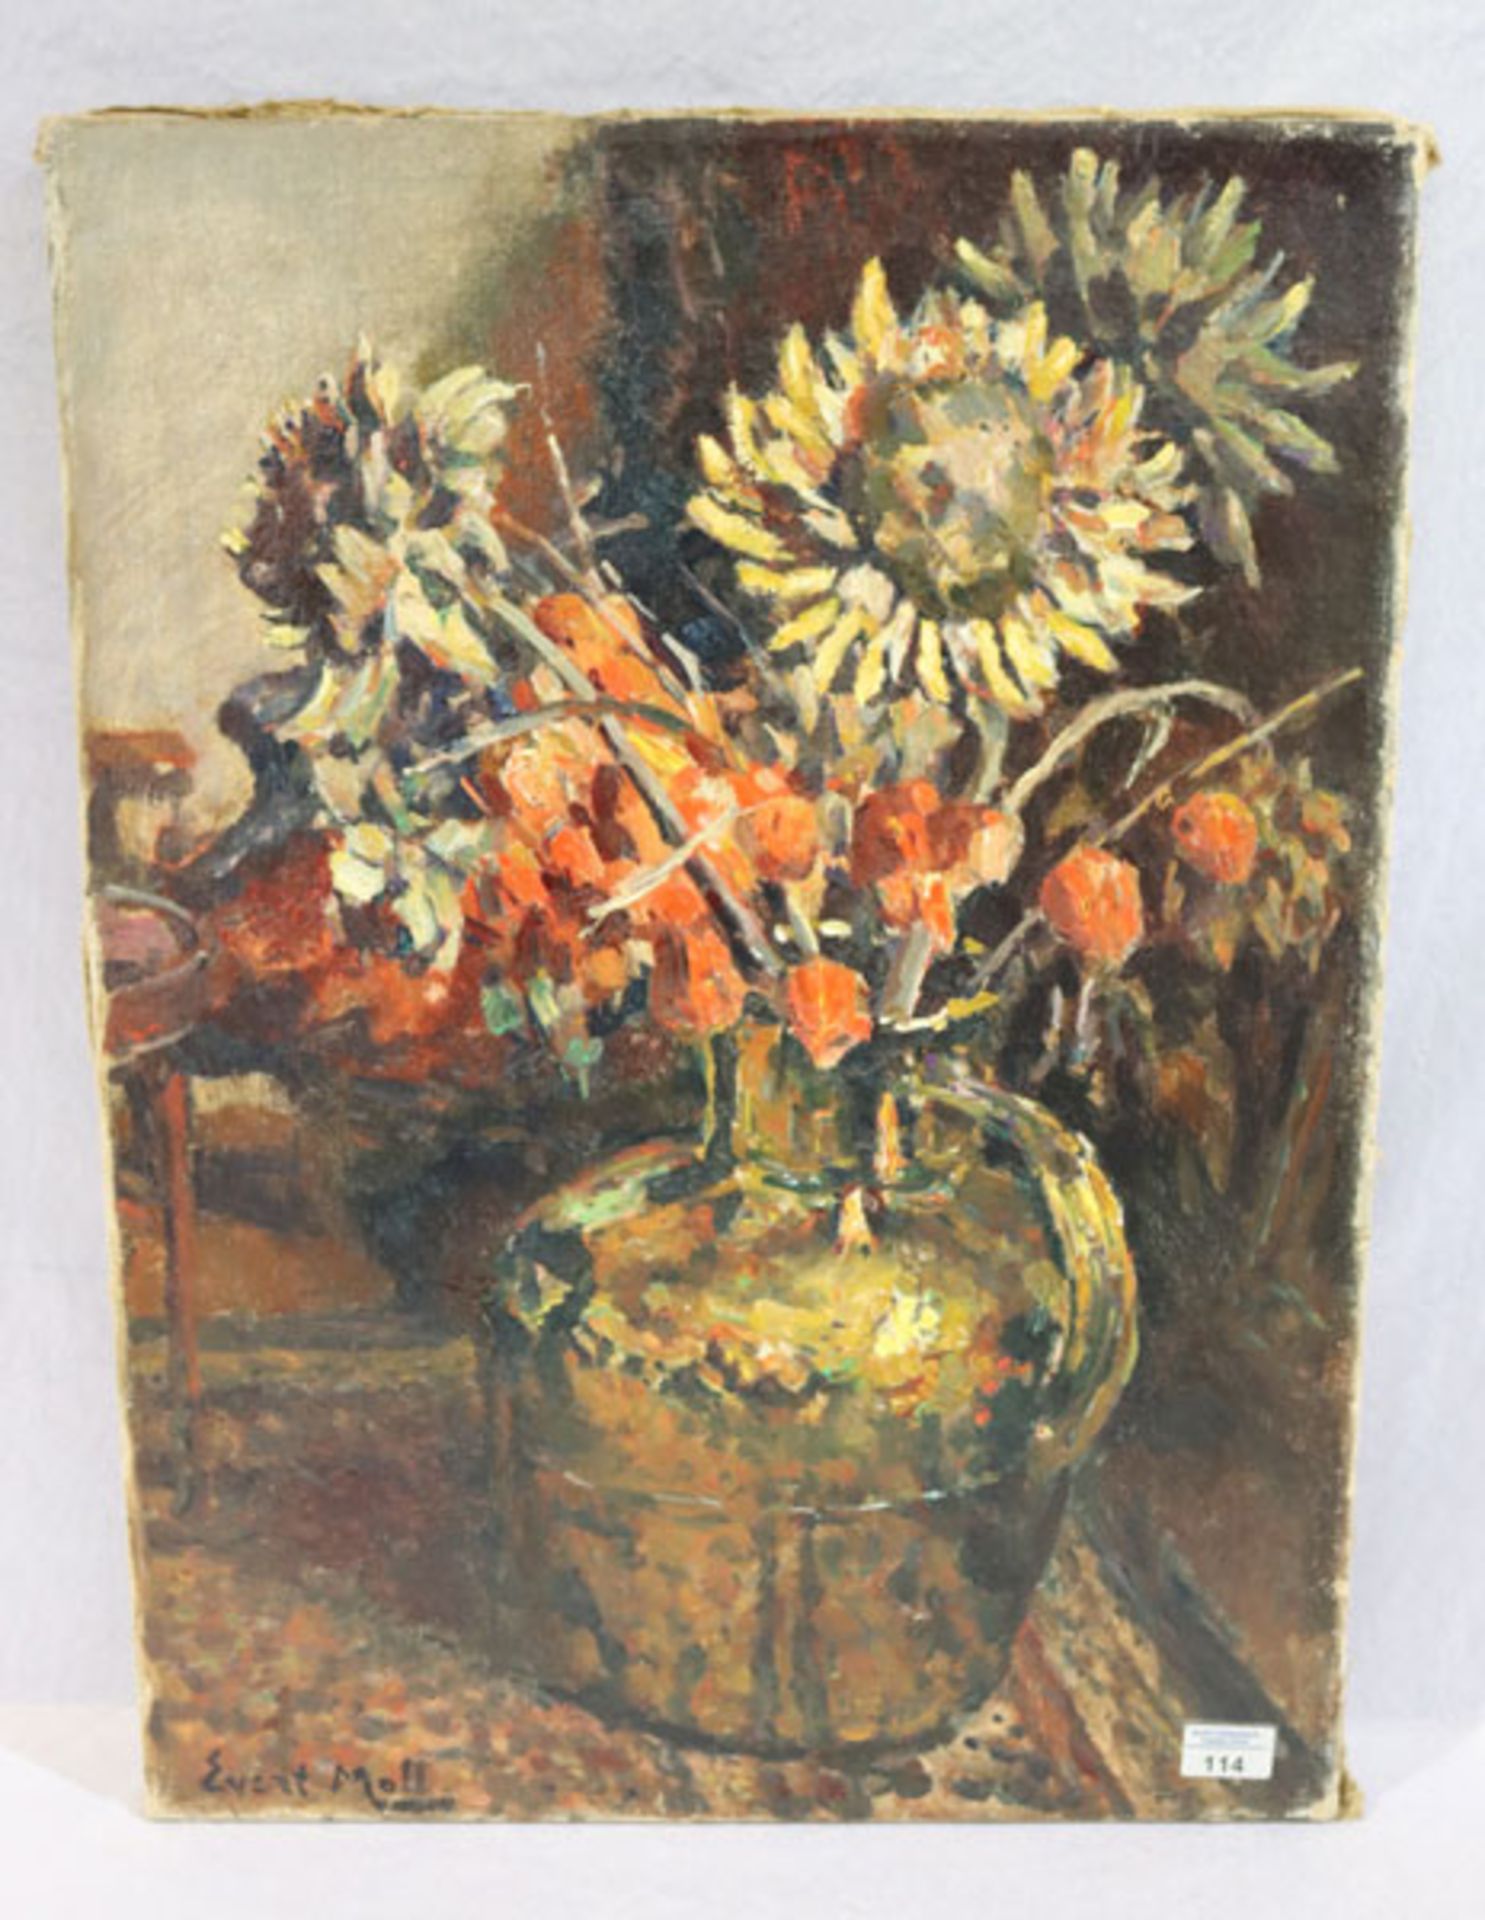 Gemälde ÖL/LW 'Blumenstillleben in Vase', signiert Evert Moll, * 1878 Rotterdam + 1955 Den Haag,